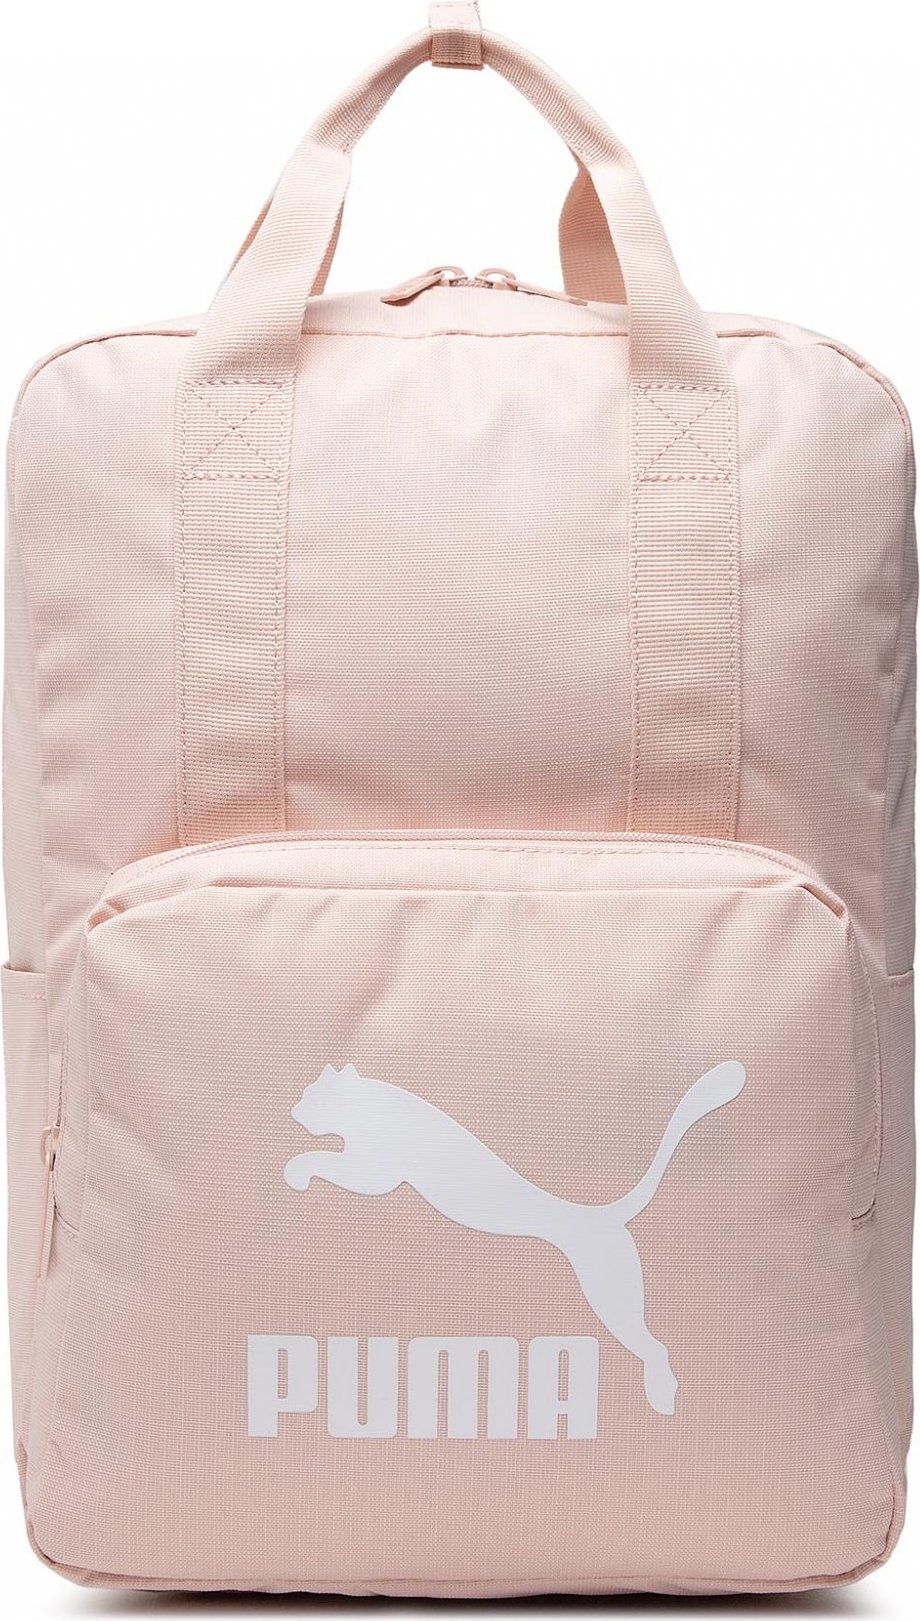 Puma Originals Tote Backpack 784810 05